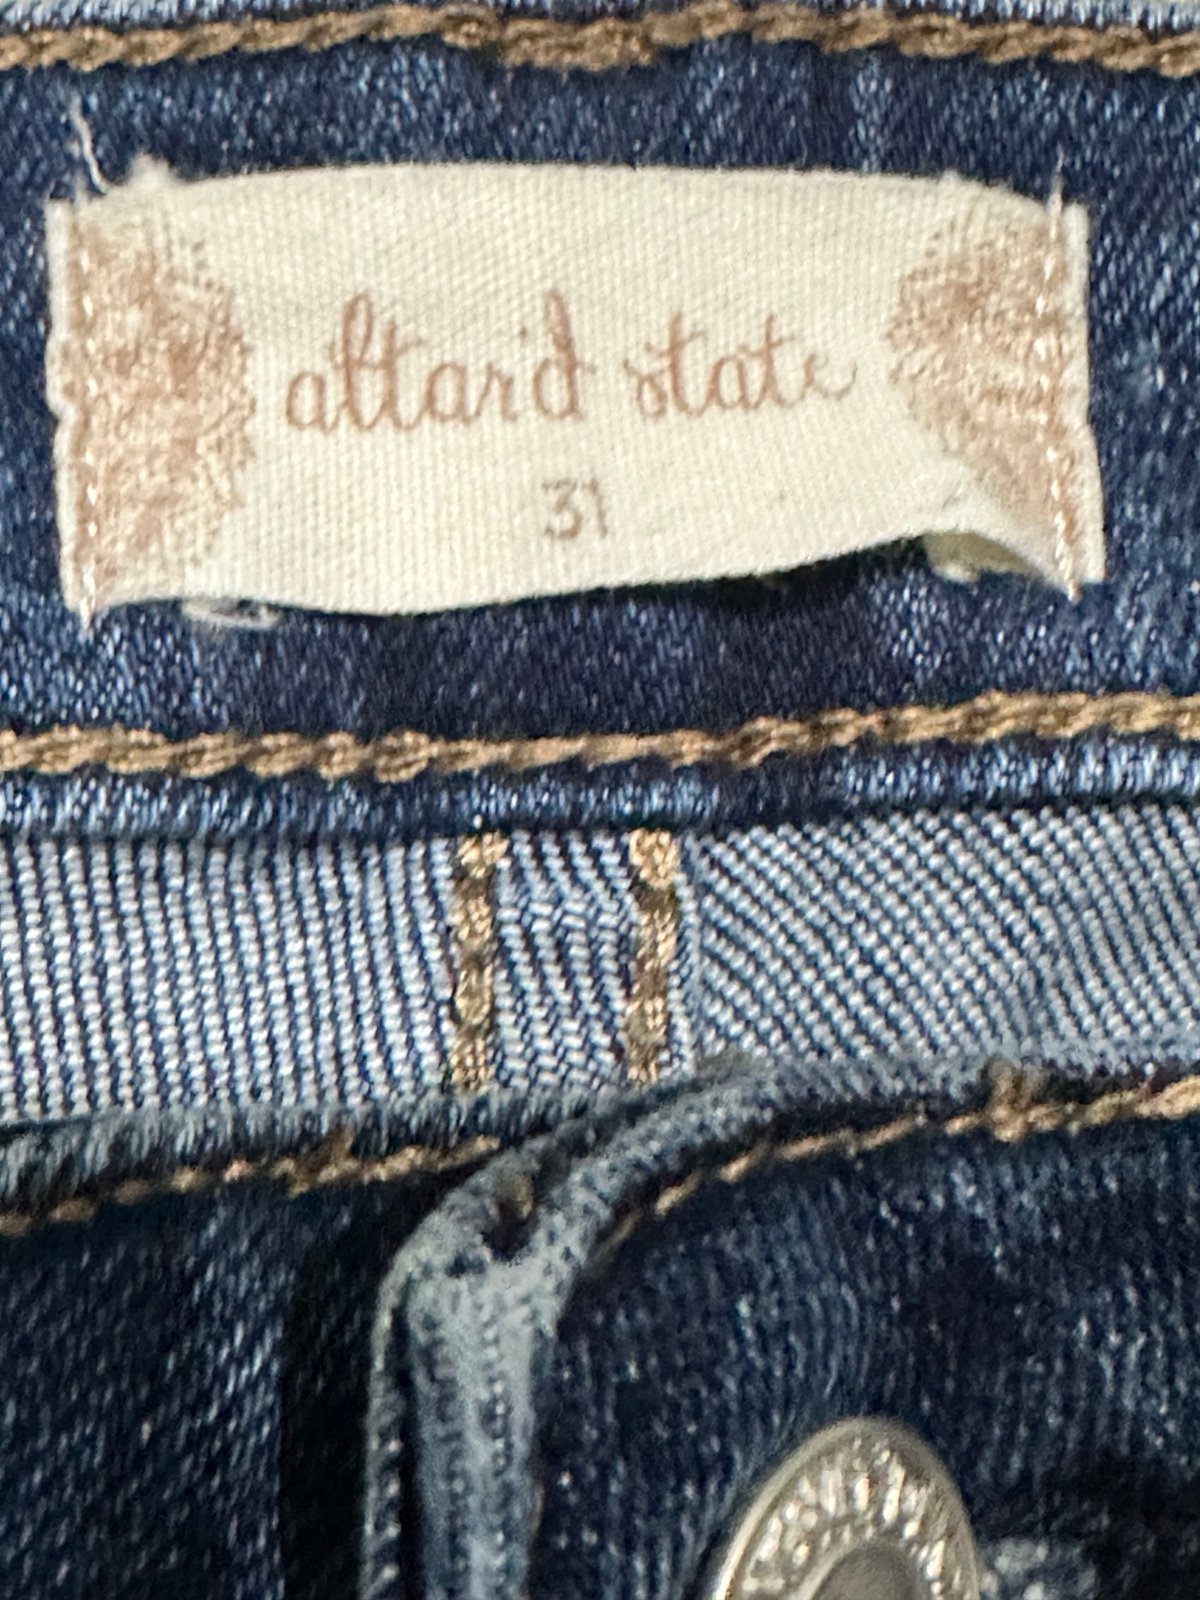 Stylish ALTAR’D State x Vervet High Waist Flare Jeans 31 hd8K029Vr outlet online shop